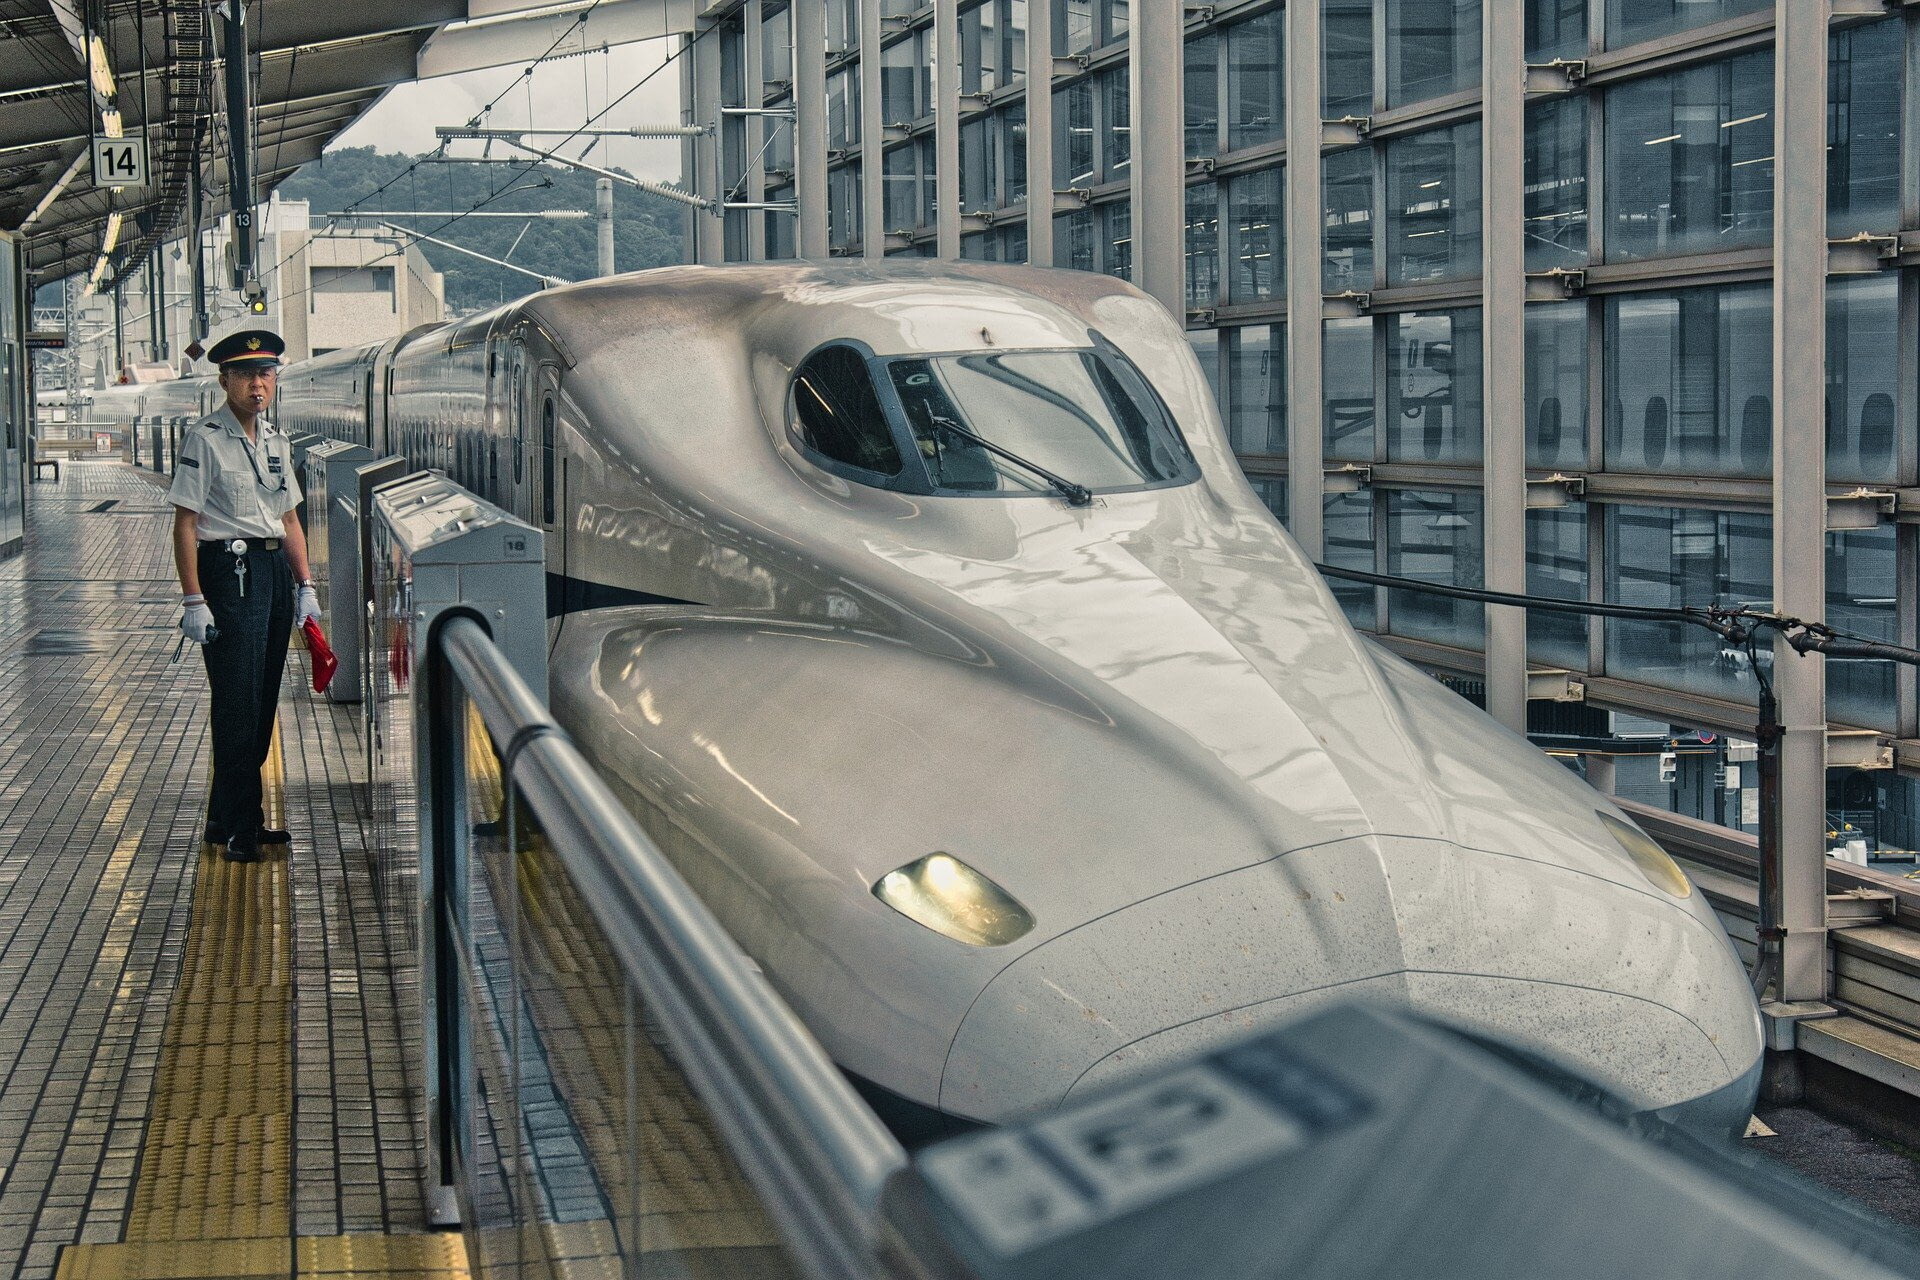 В Японии водитель сверхскоростного поезда покинул кабину, чтобы сходить в туалет 